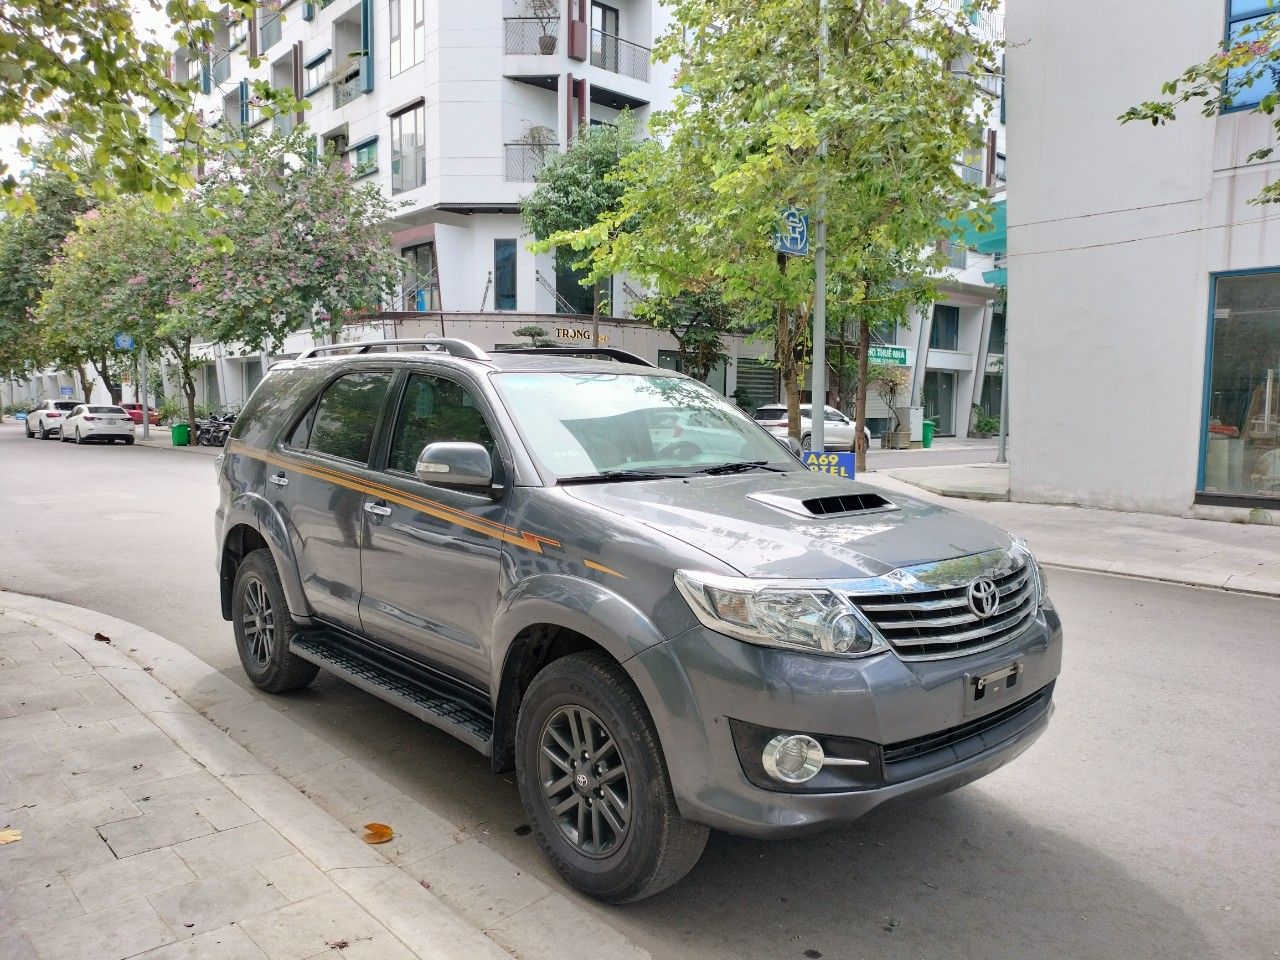 ATautovn bán xe Toyota Fortuner 25G diesel MT 2016 số sàn  ATautovn  Chuyên mua bán xe ô tô cũ đã qua sử dụng tất cả các hãng xe ô tô